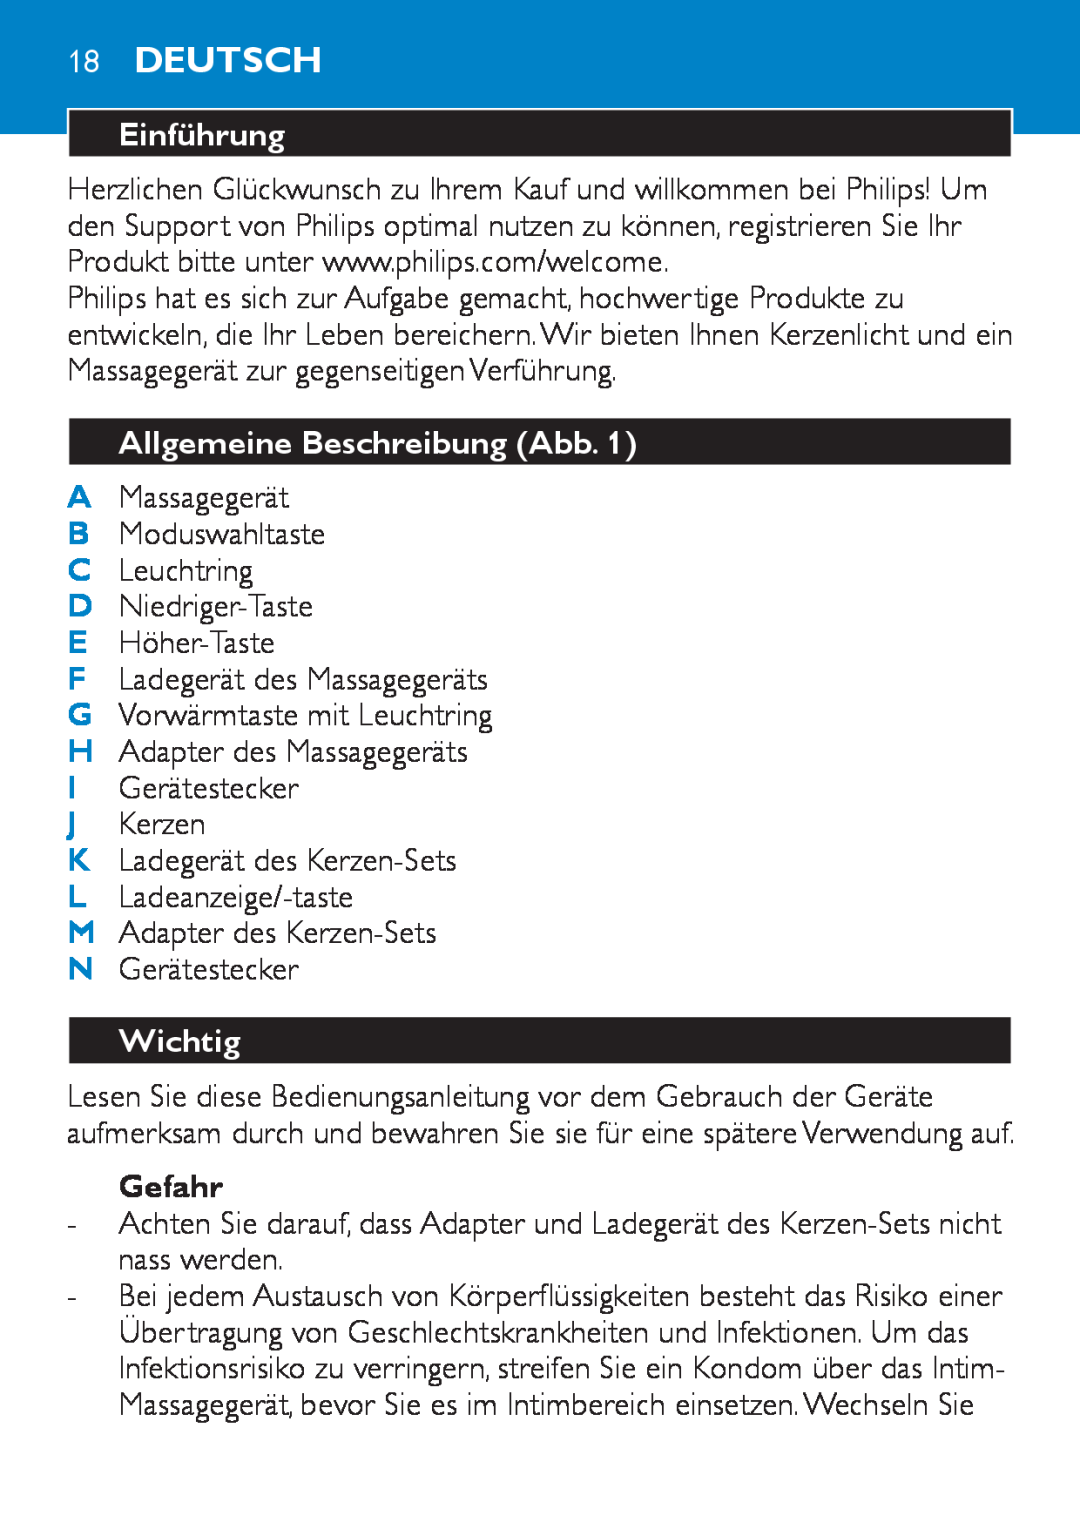 Philips HF8430 manual 18Deutsch, Einführung, Allgemeine Beschreibung Abb, Wichtig, Gefahr 